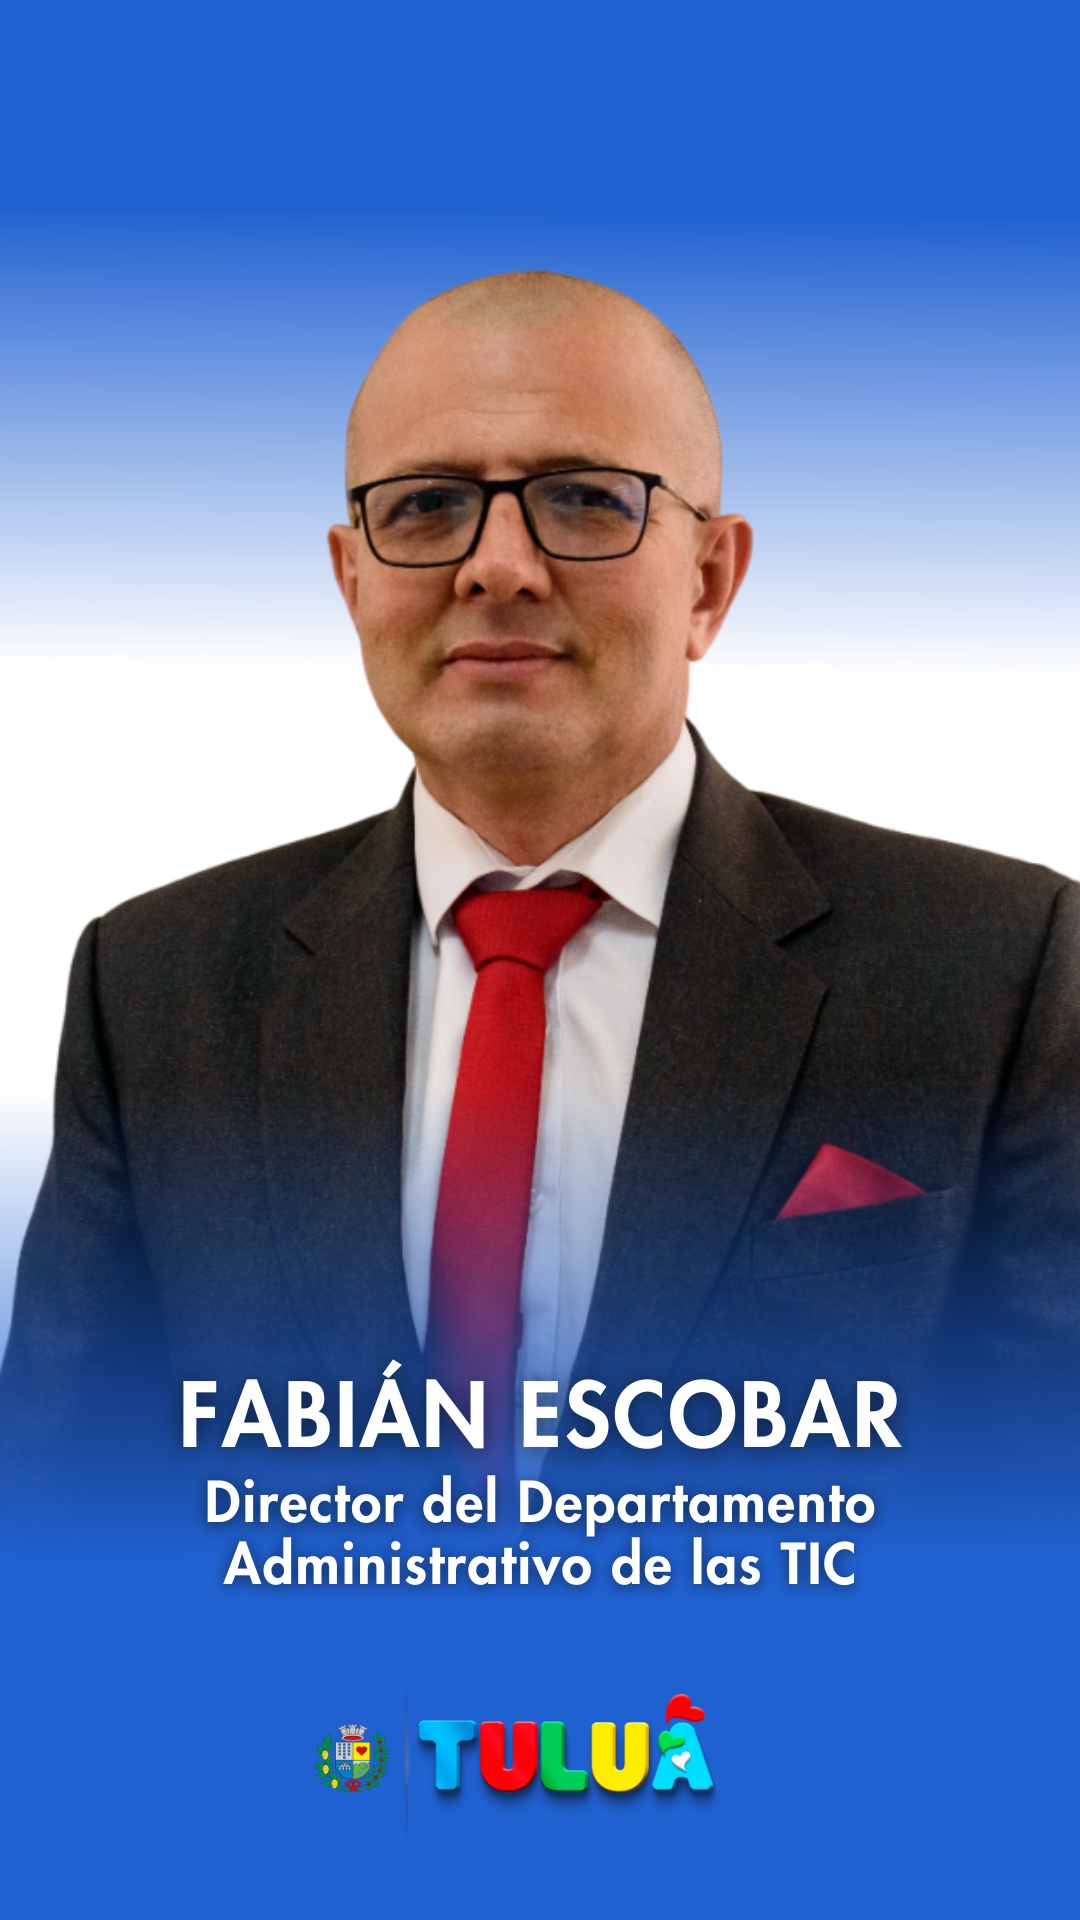 Fabián Escobar